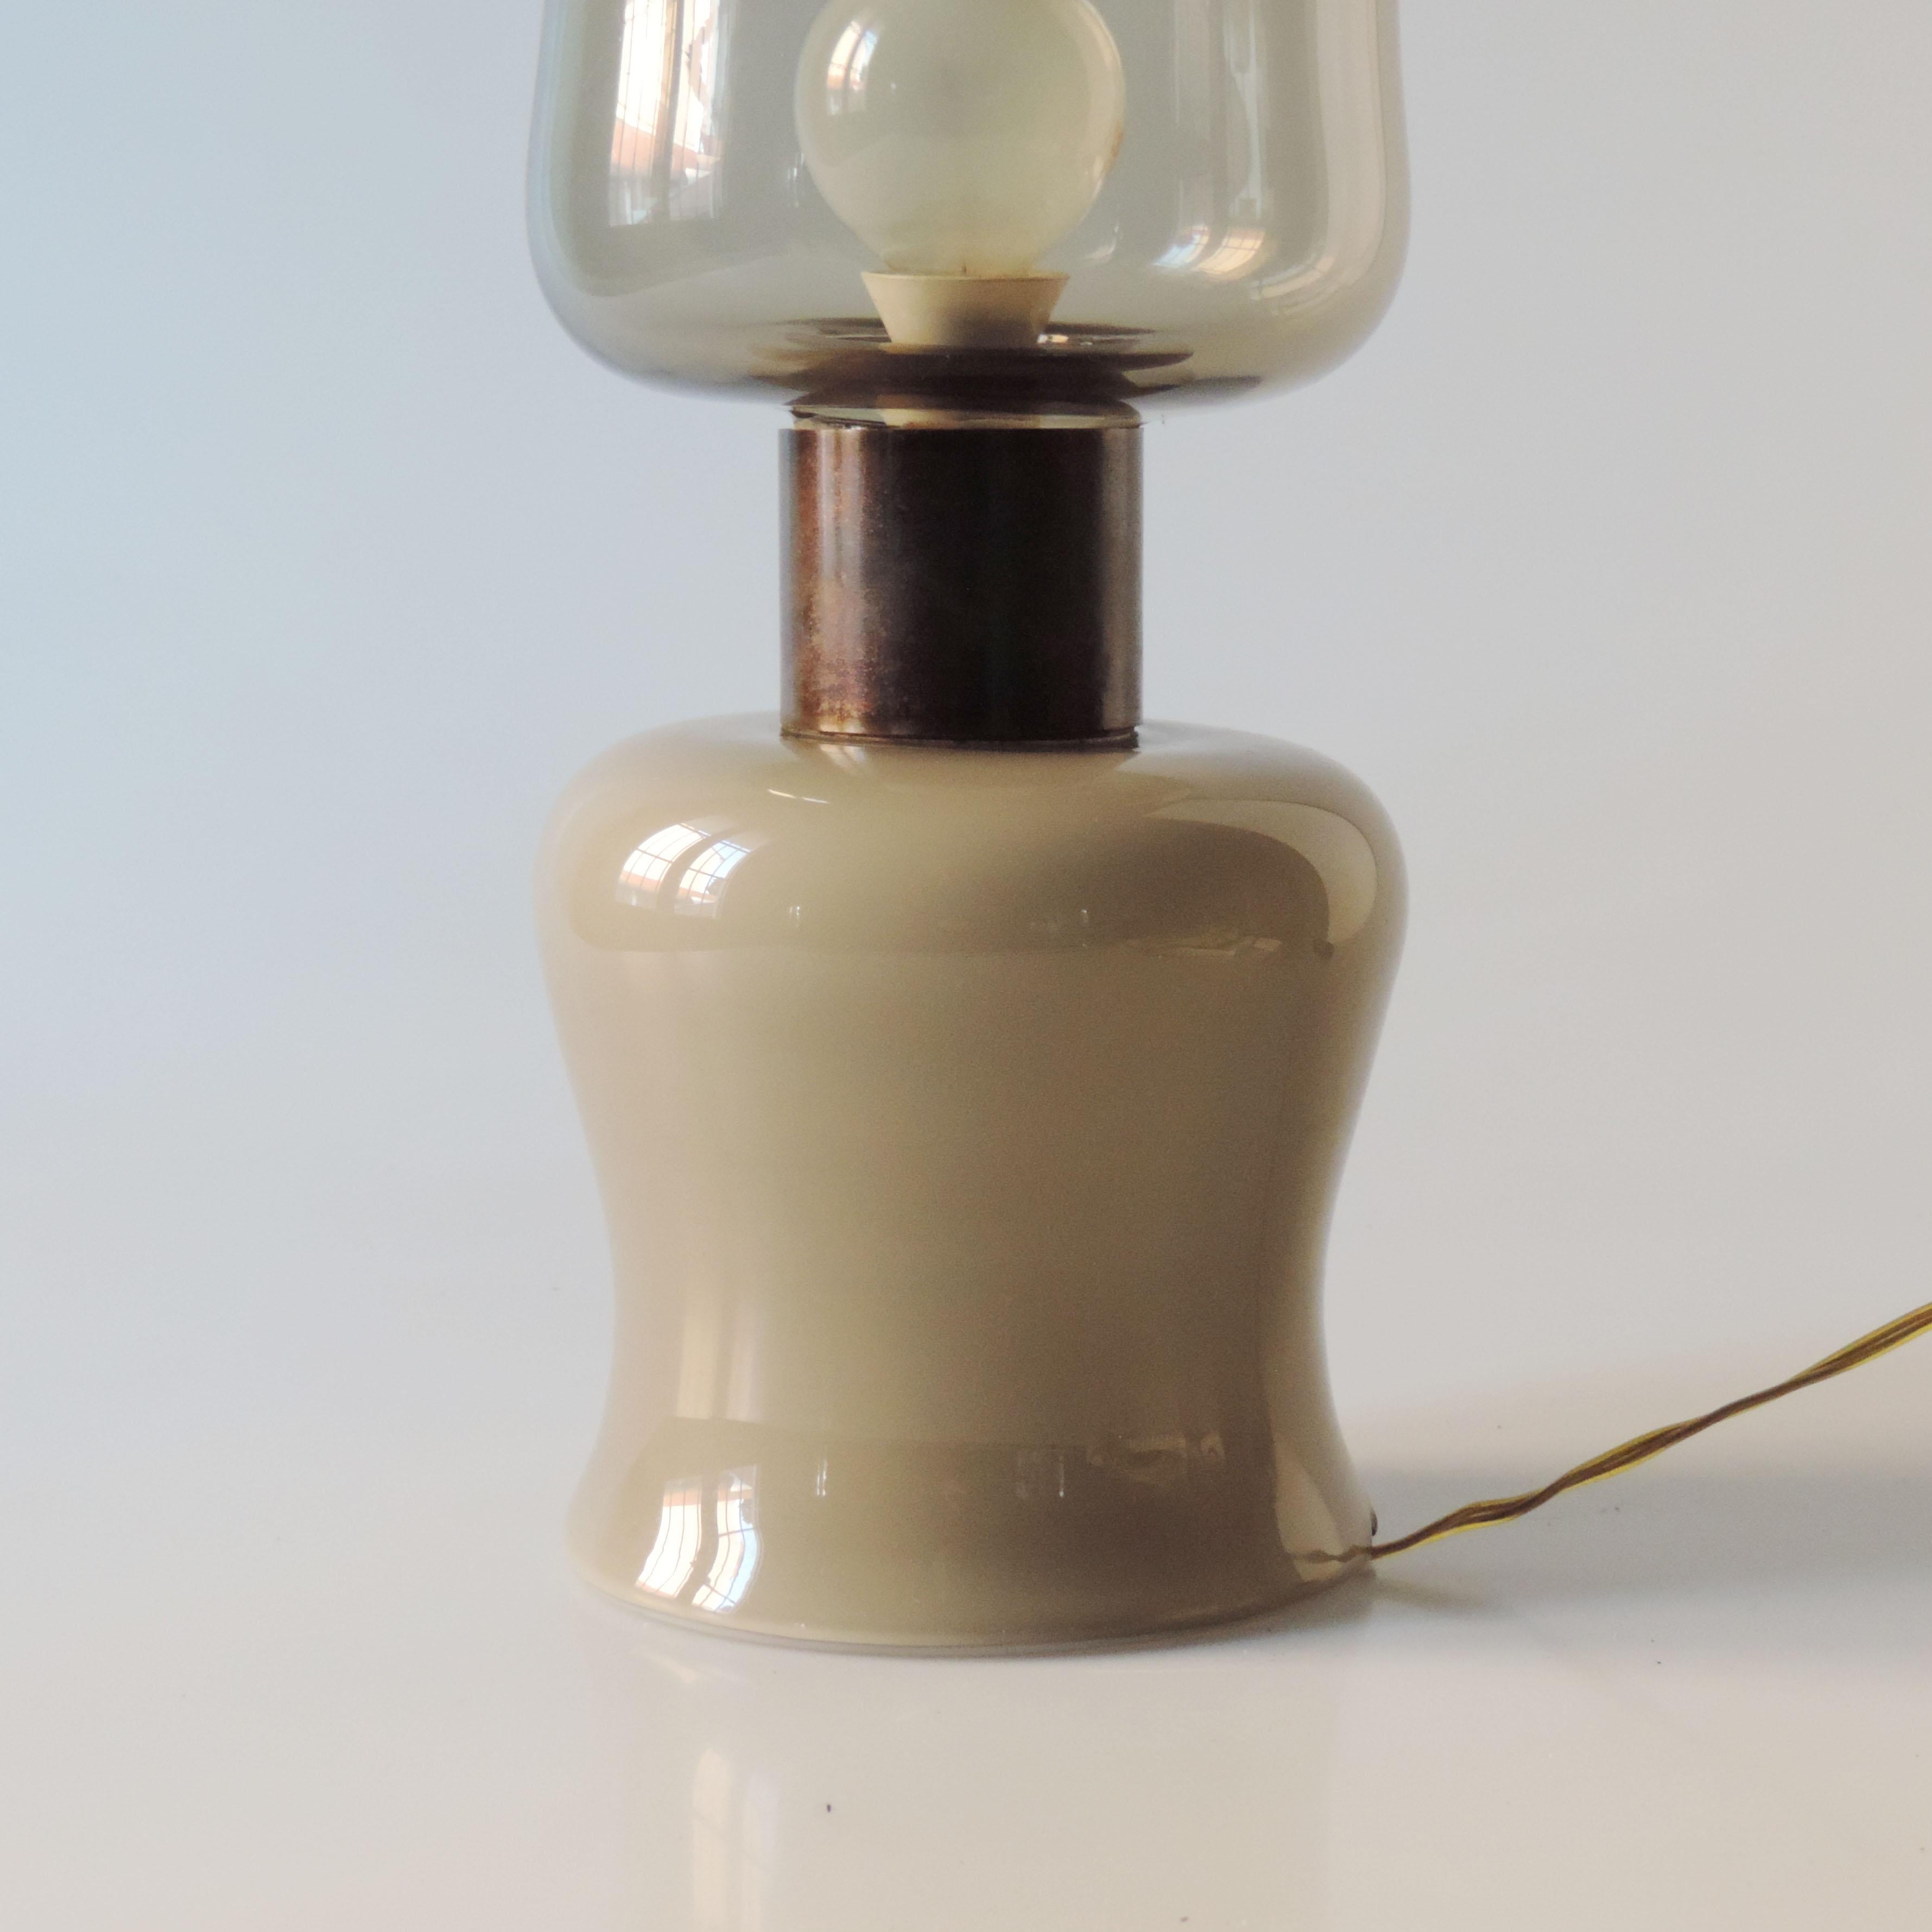 Italienische Tischlampe aus Muranoglas von 1958 aus hellgrauem und hellbraunem Glas.
Mit der Aufschrift:
Arte Nuova Murano
Großer Preis
Weltausstellung in Brüssel 1958.